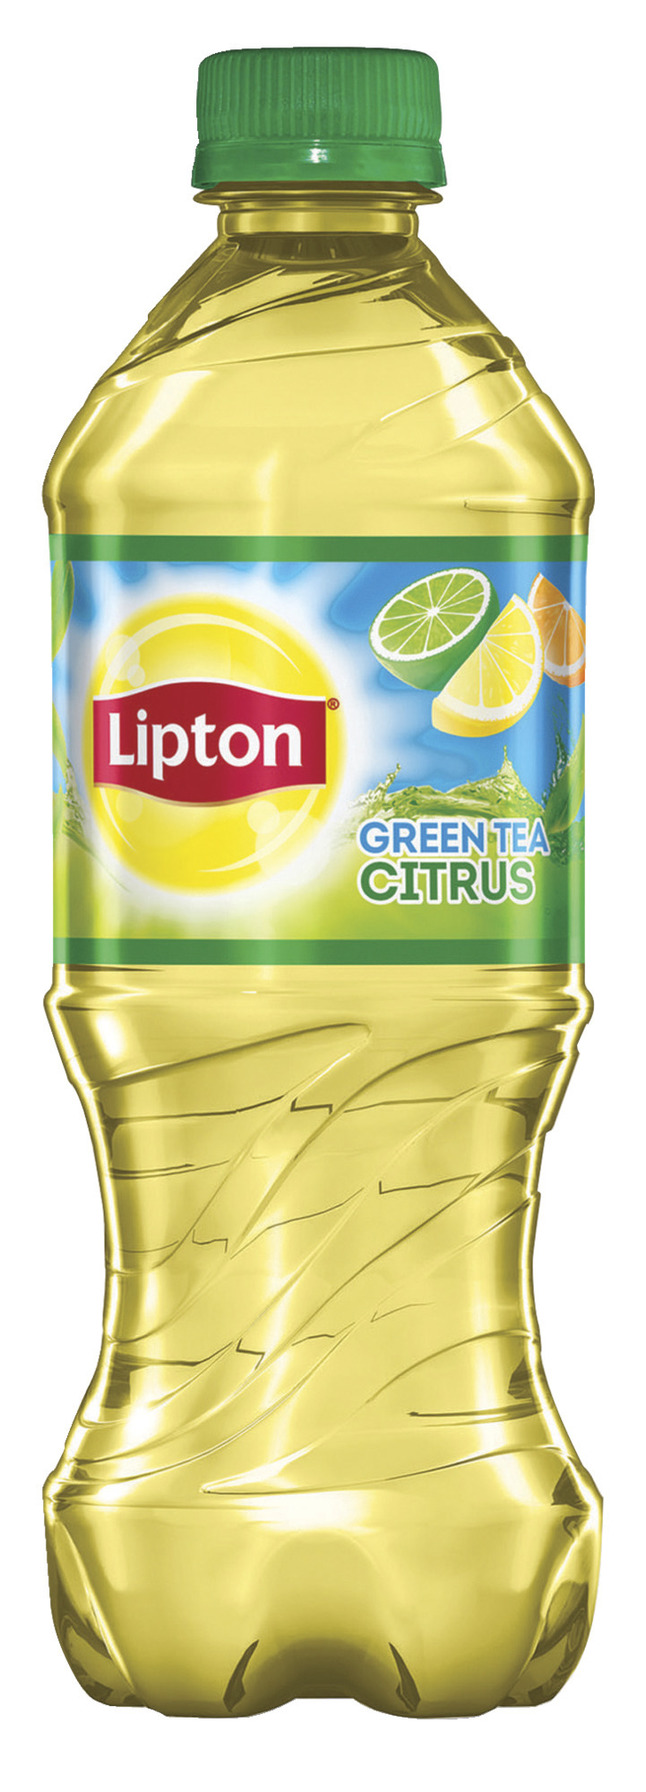 Pepsico Lipton Citrus Green Tea, 20 oz, 24 Per Carton, Item Number 1537430